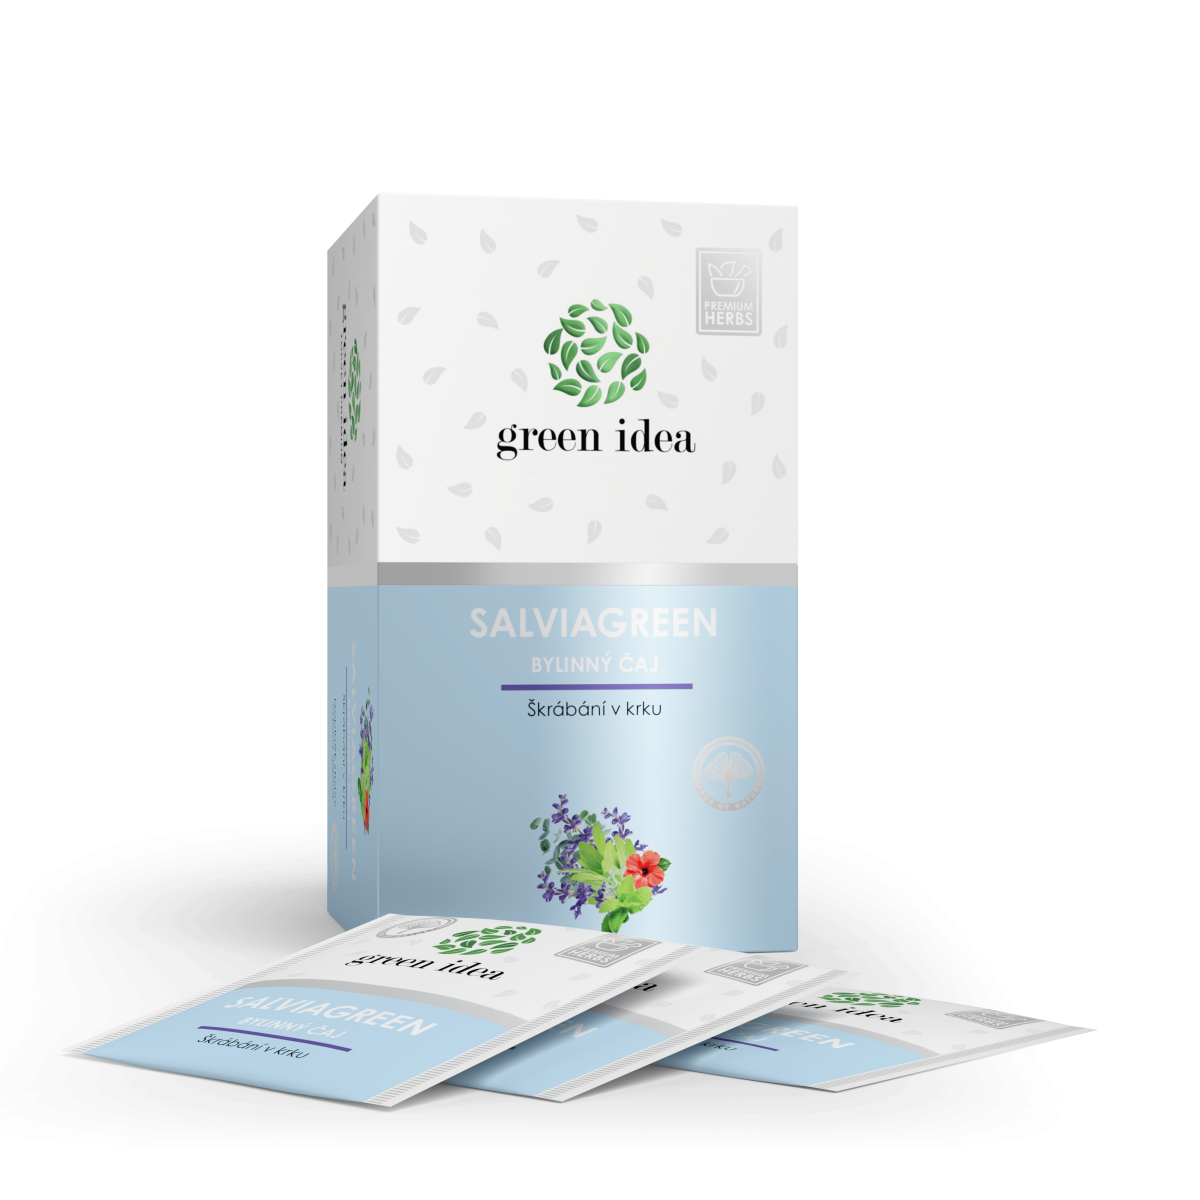 Salviagreen - bylinný čaj